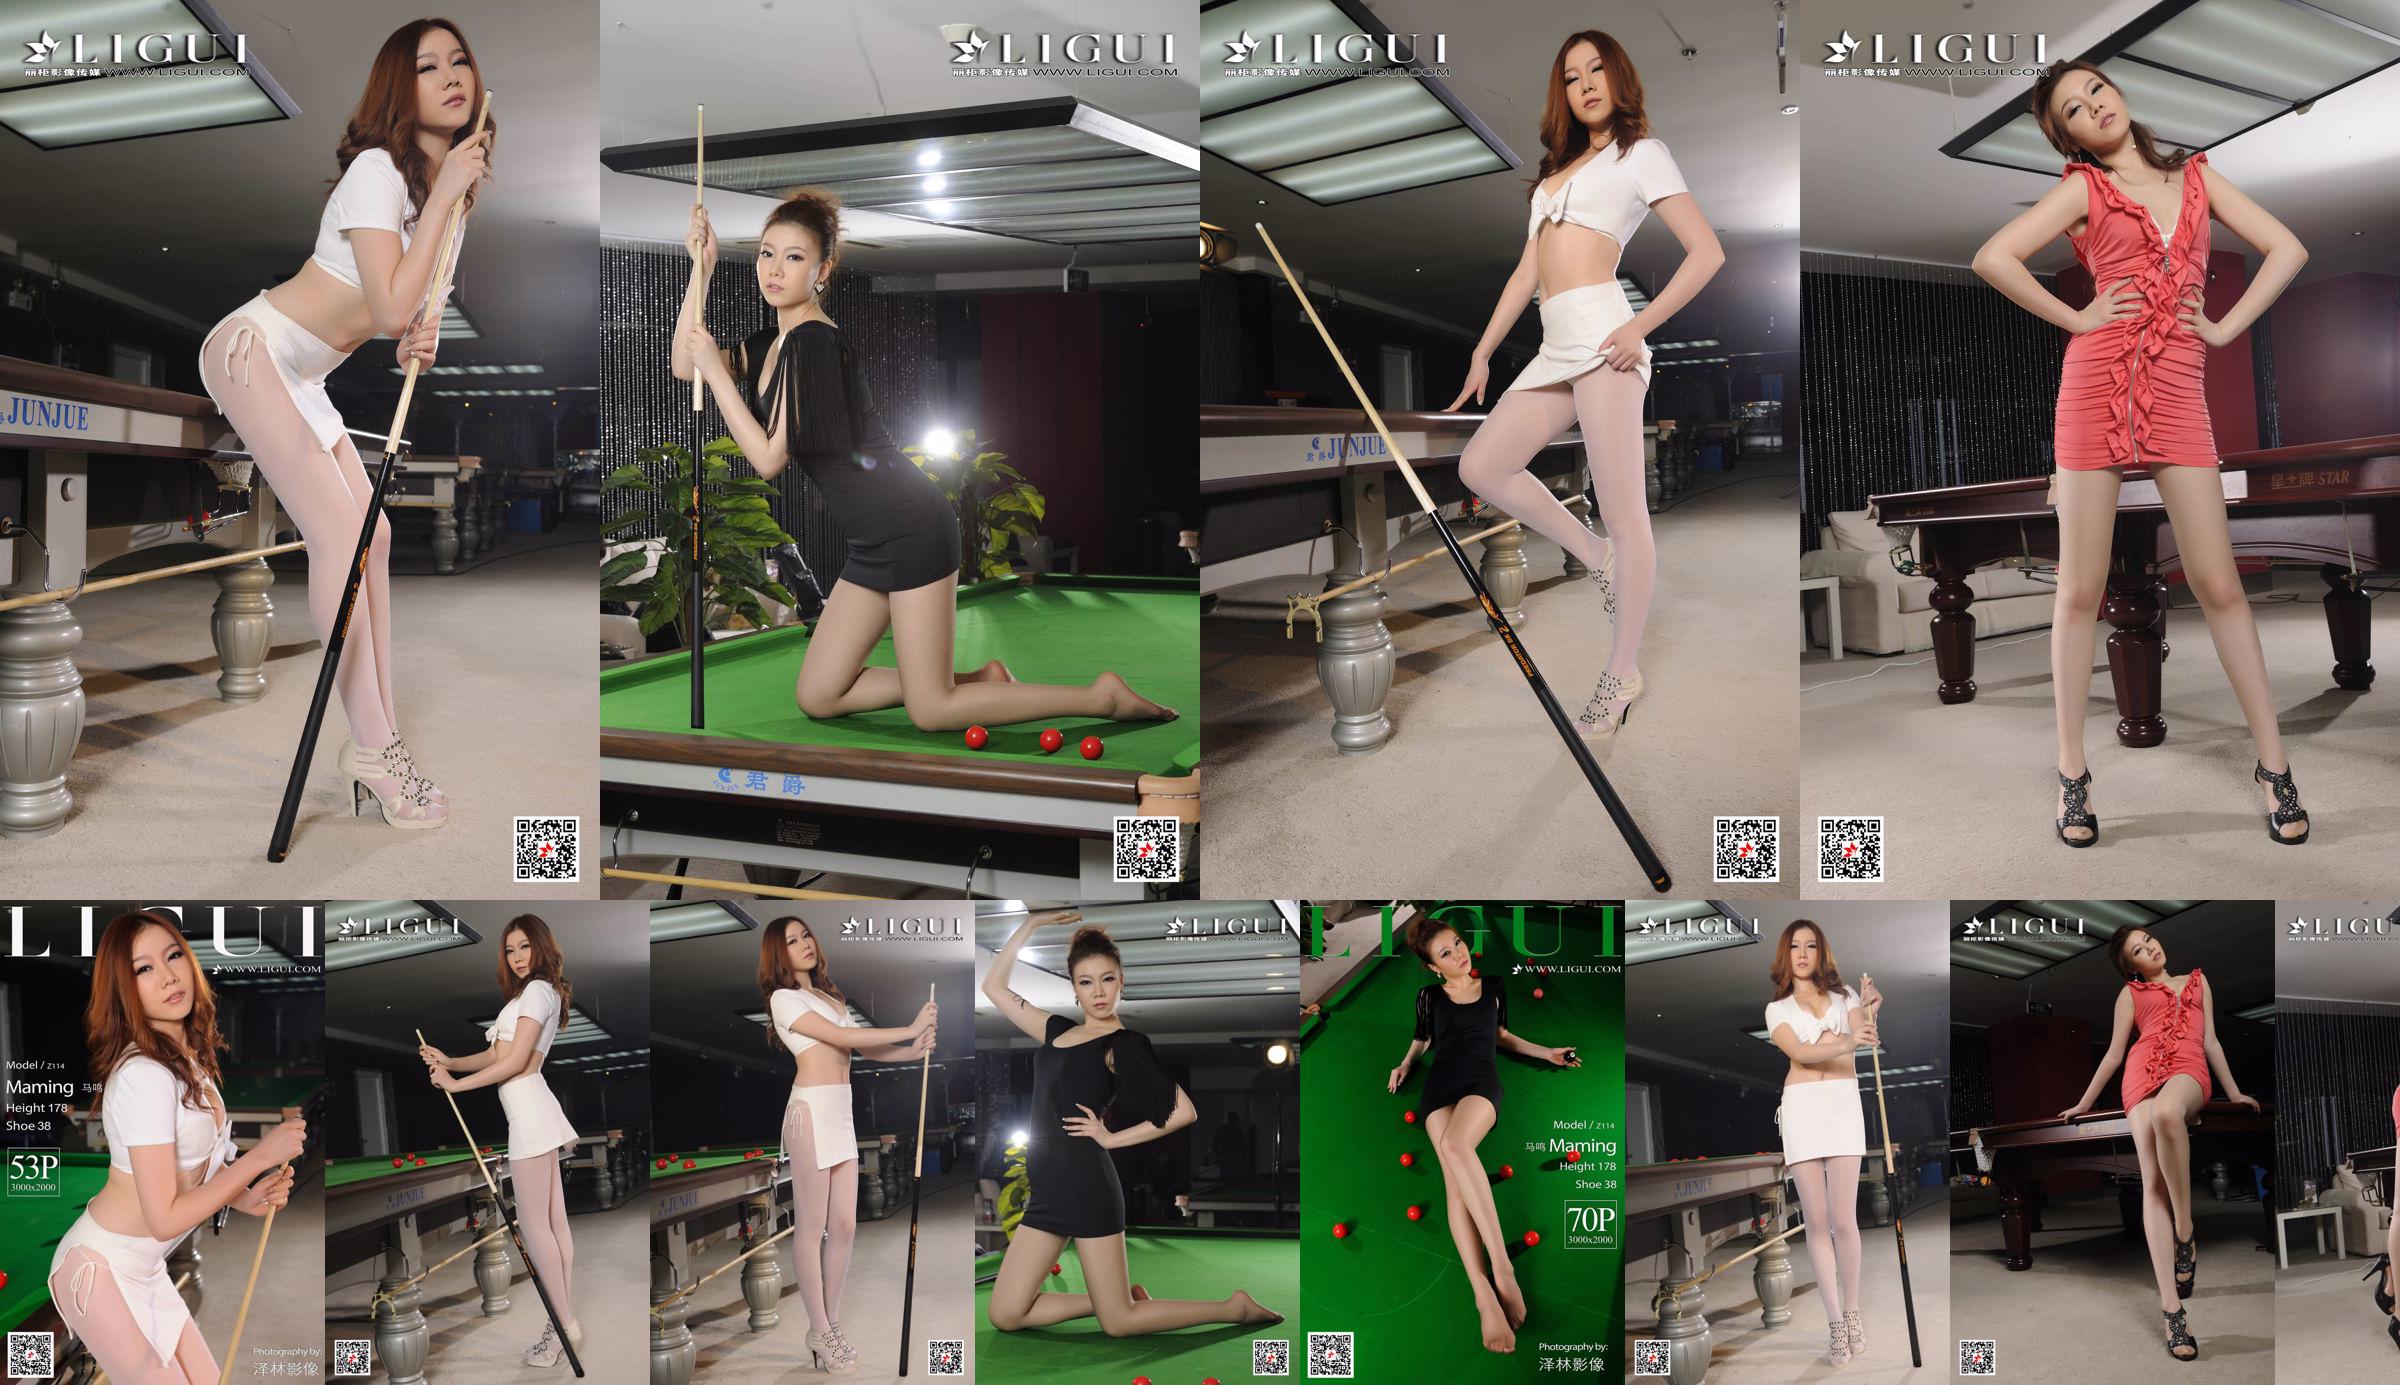 Người mẫu Mã Minh "Bai Si Uniform Billiard Girl" [Ligui Ligui] No.0d58f8 Trang 1